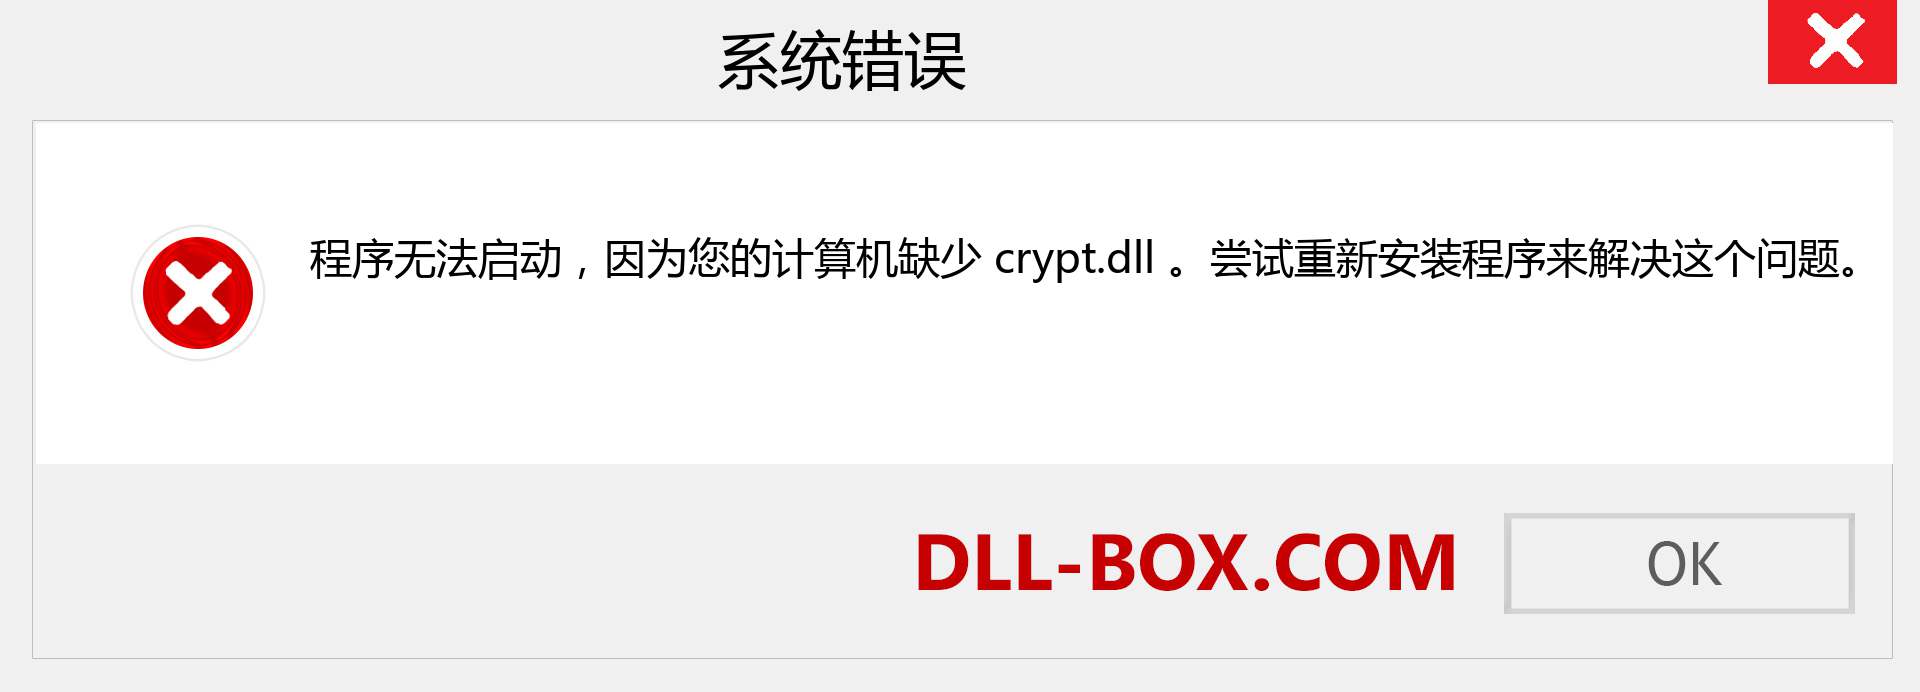 crypt.dll 文件丢失？。 适用于 Windows 7、8、10 的下载 - 修复 Windows、照片、图像上的 crypt dll 丢失错误